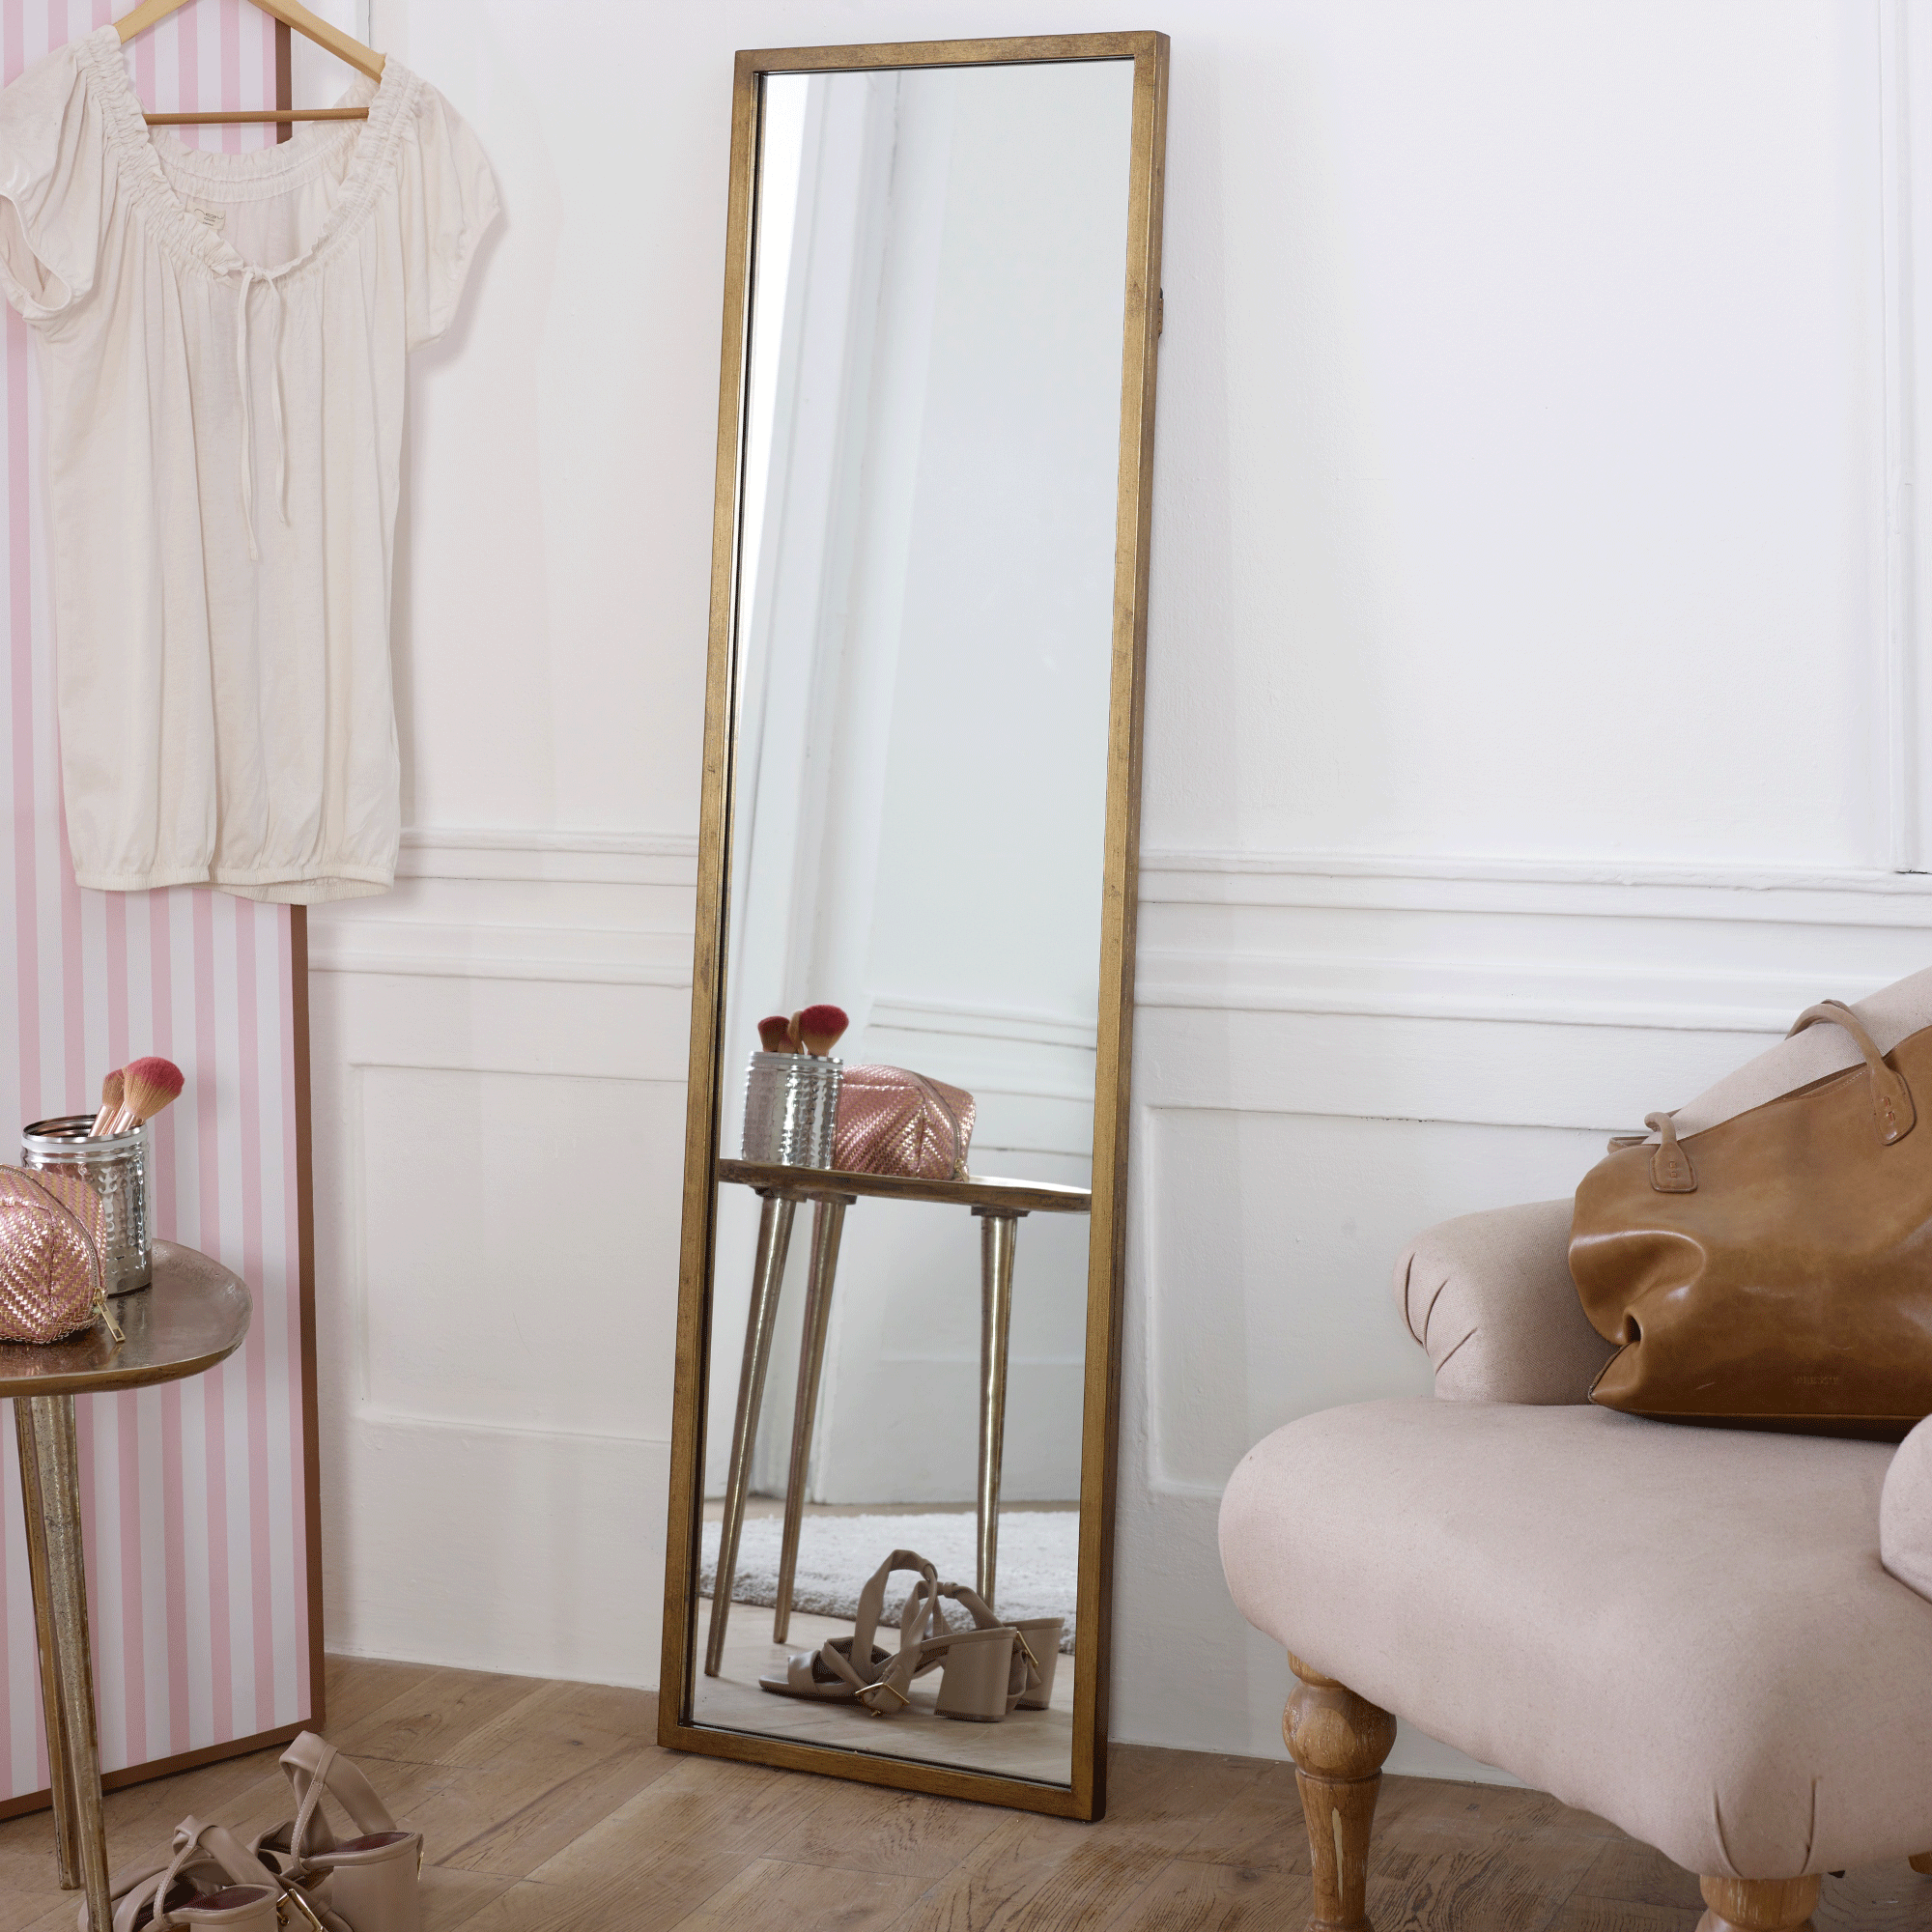 Full length mirror in small bedroom